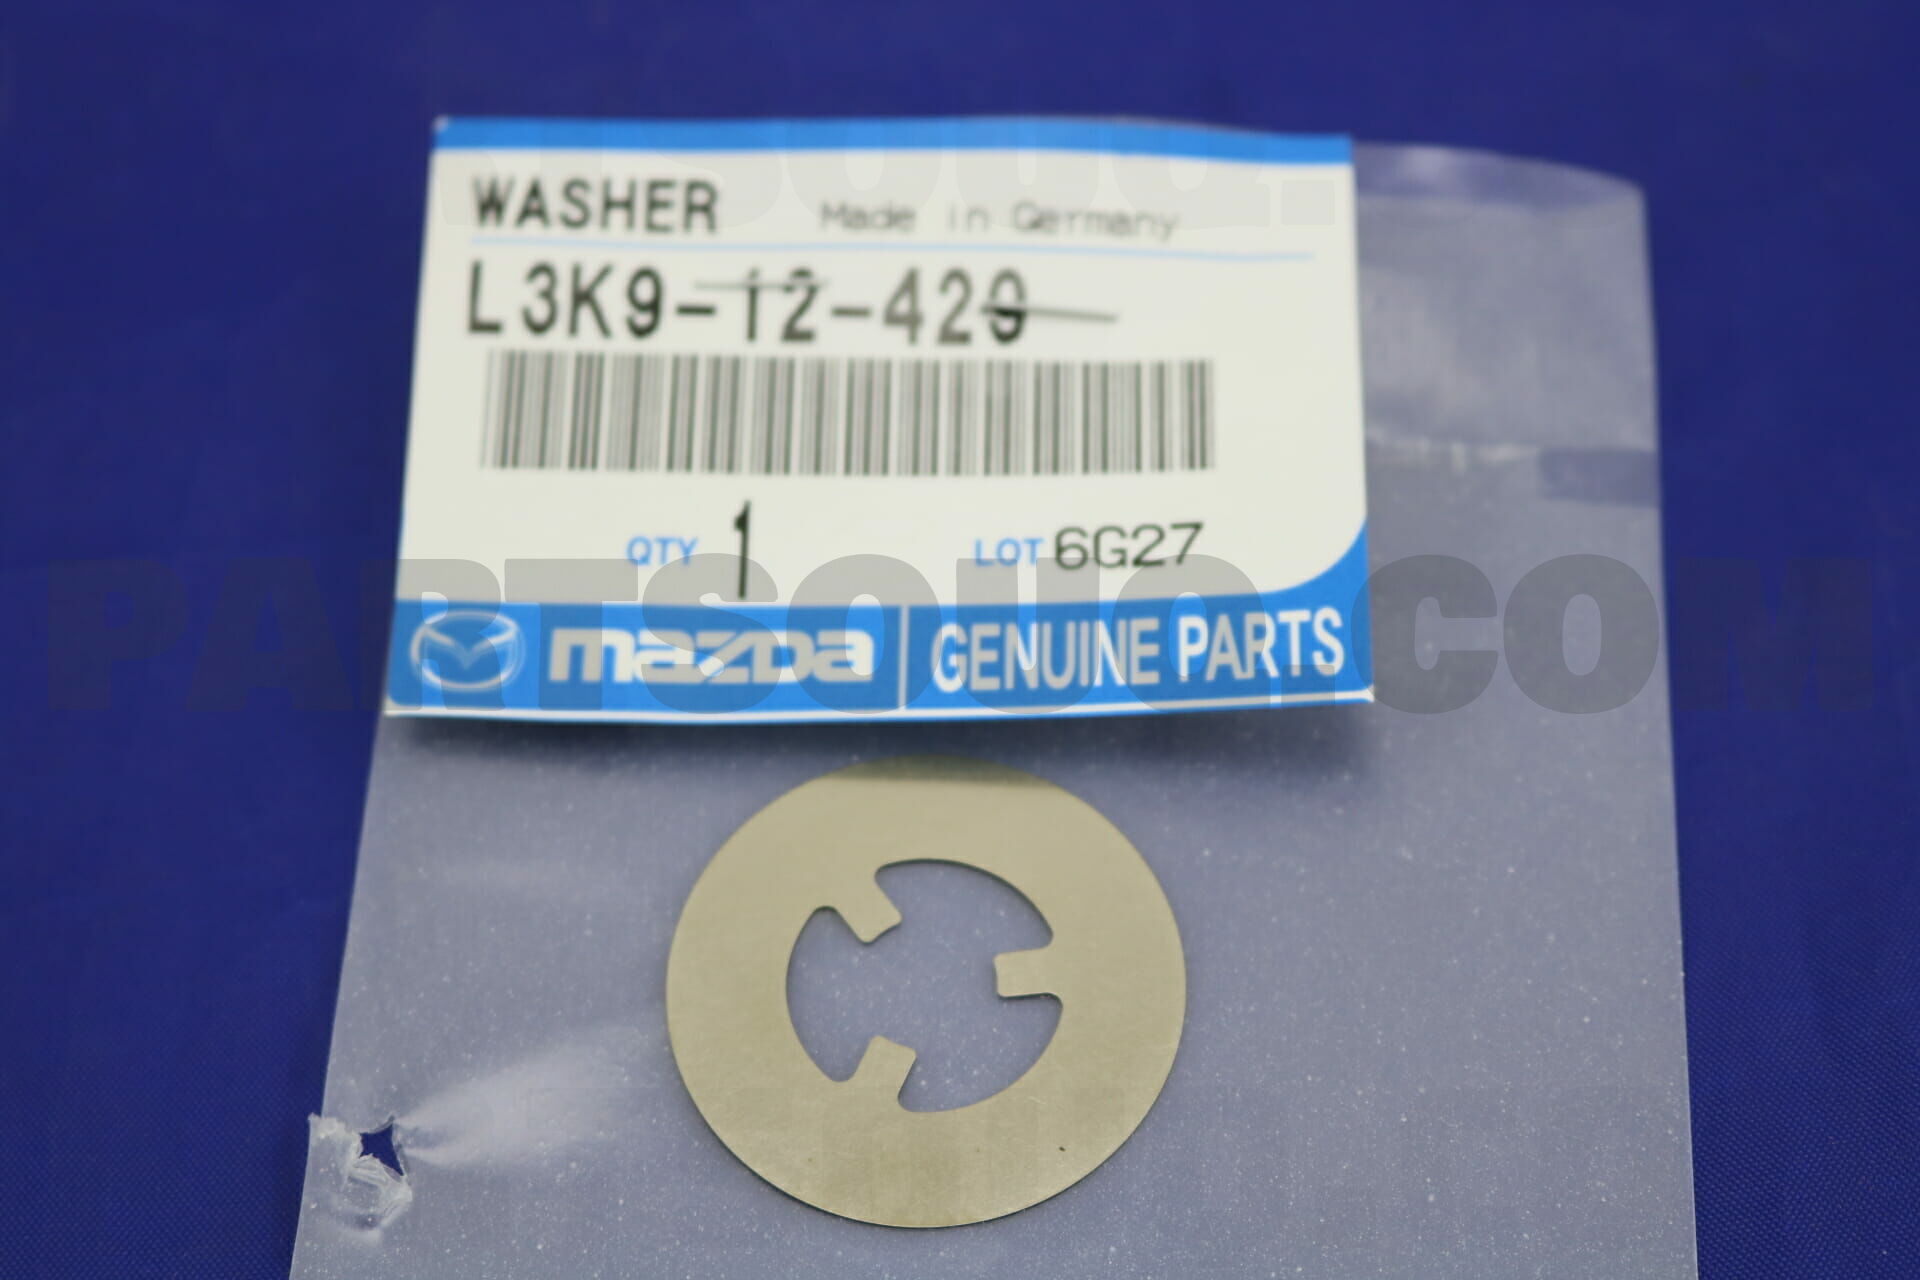 Genuine Mazda L3K9-12-429 Crankcase Washer 